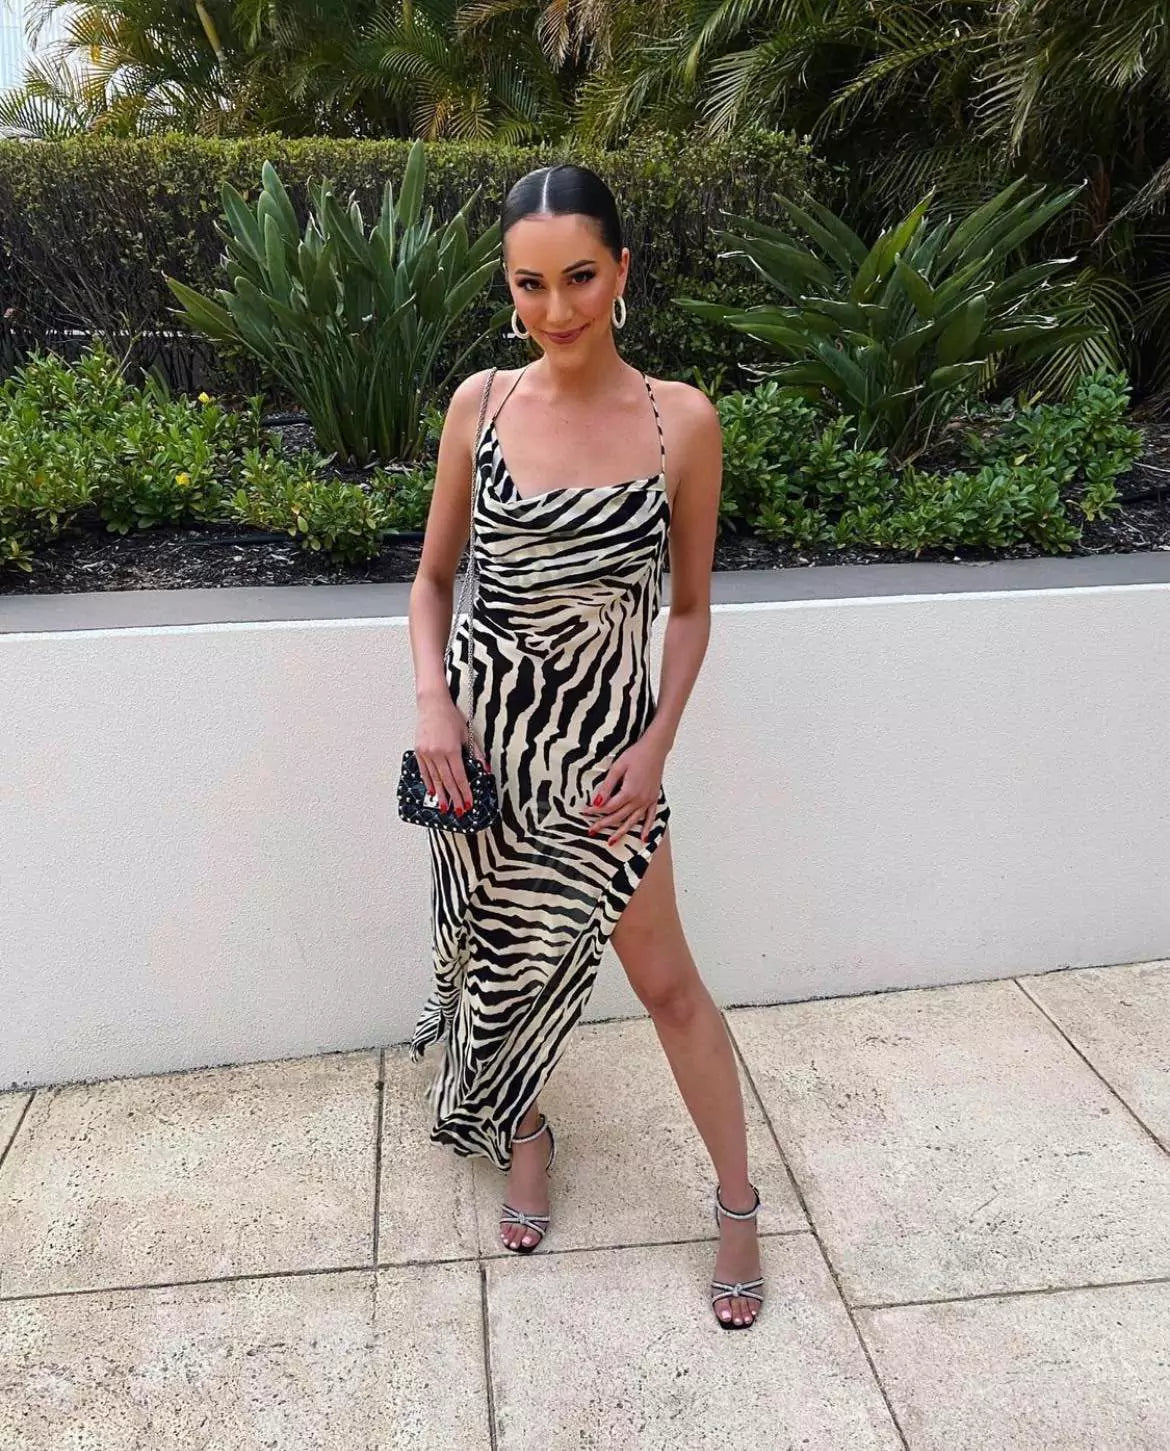 A woman posing in a zebra print dress.